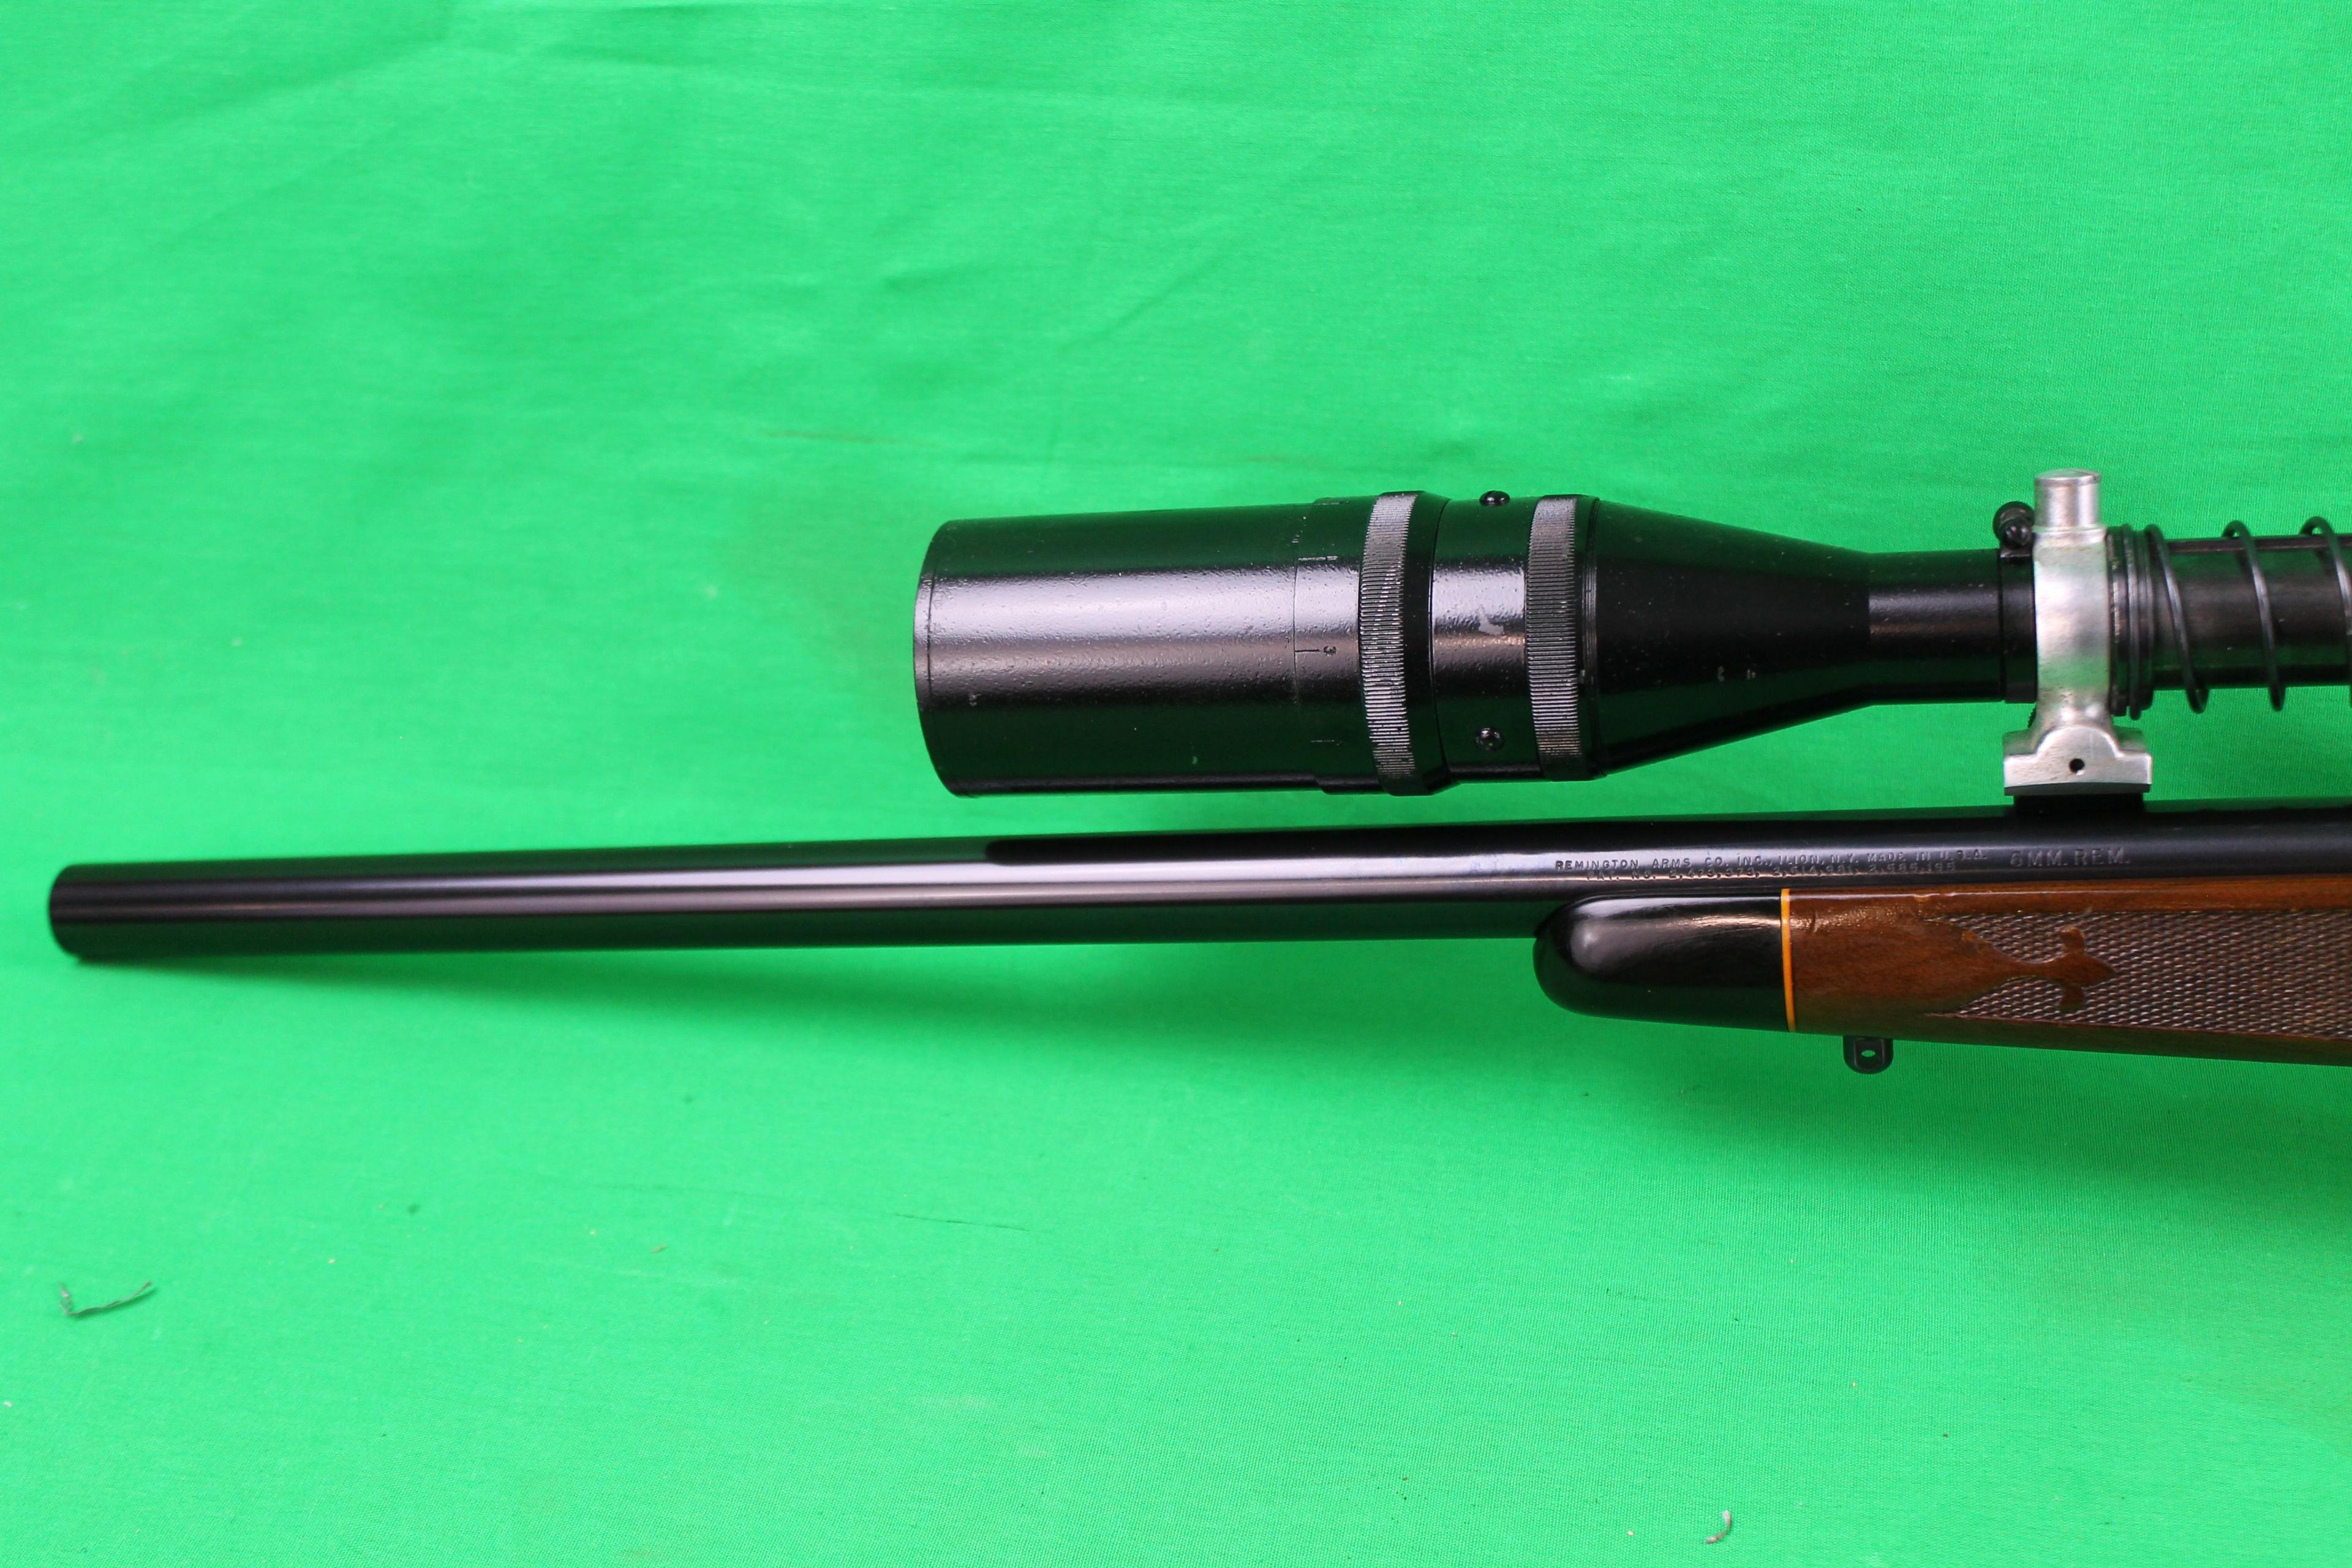 Remington 700 6 mm Rem, J.UNERTL Scope #56451